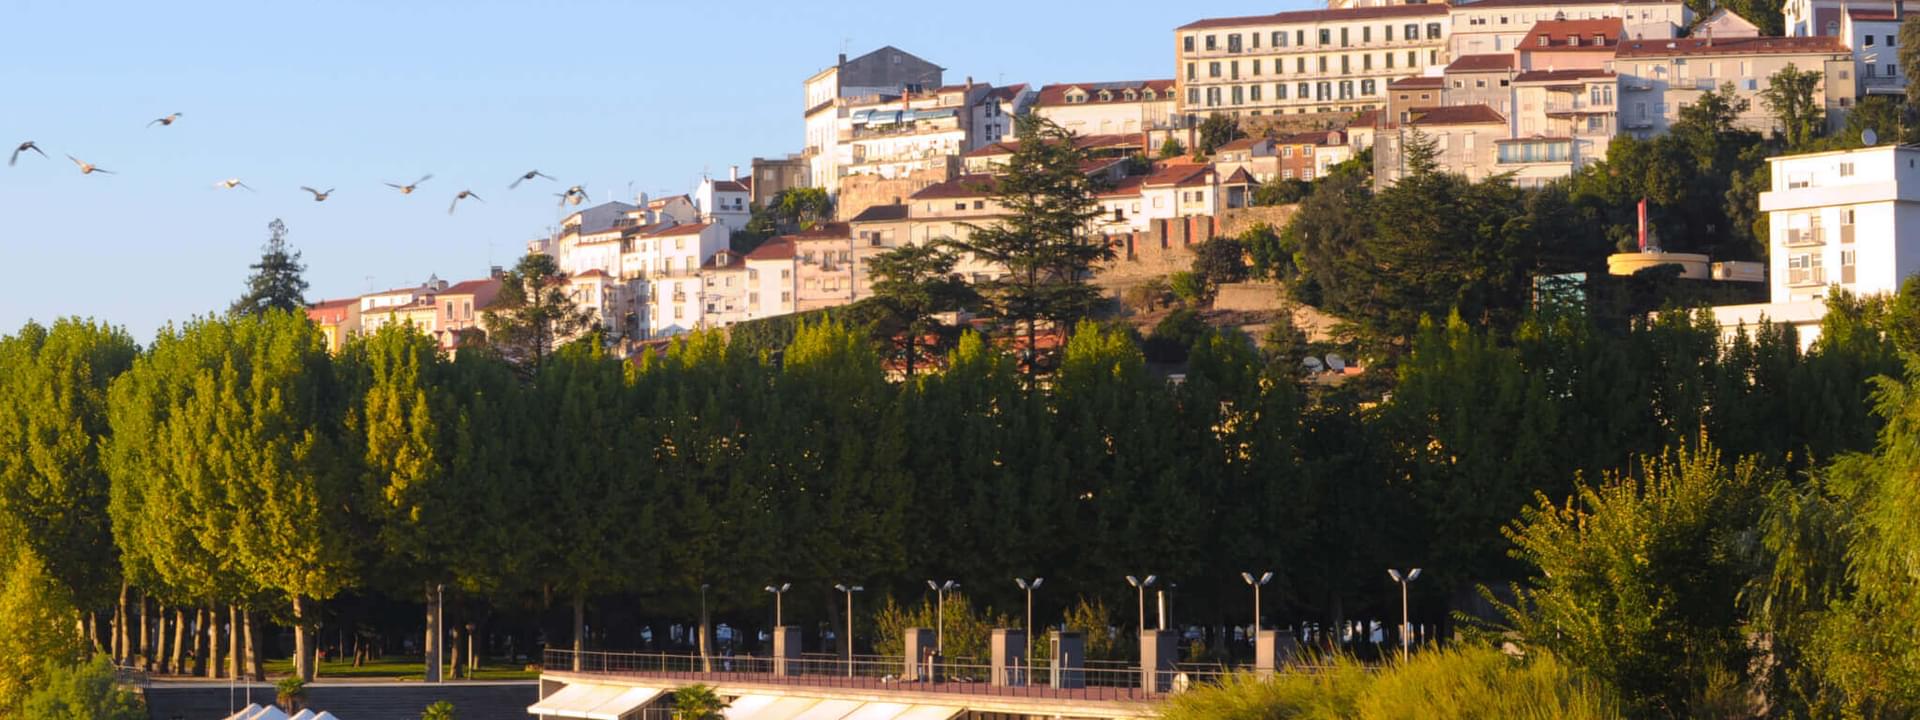 Die 17 schönsten Städte, die man im Centro de Portugal besuchen kann